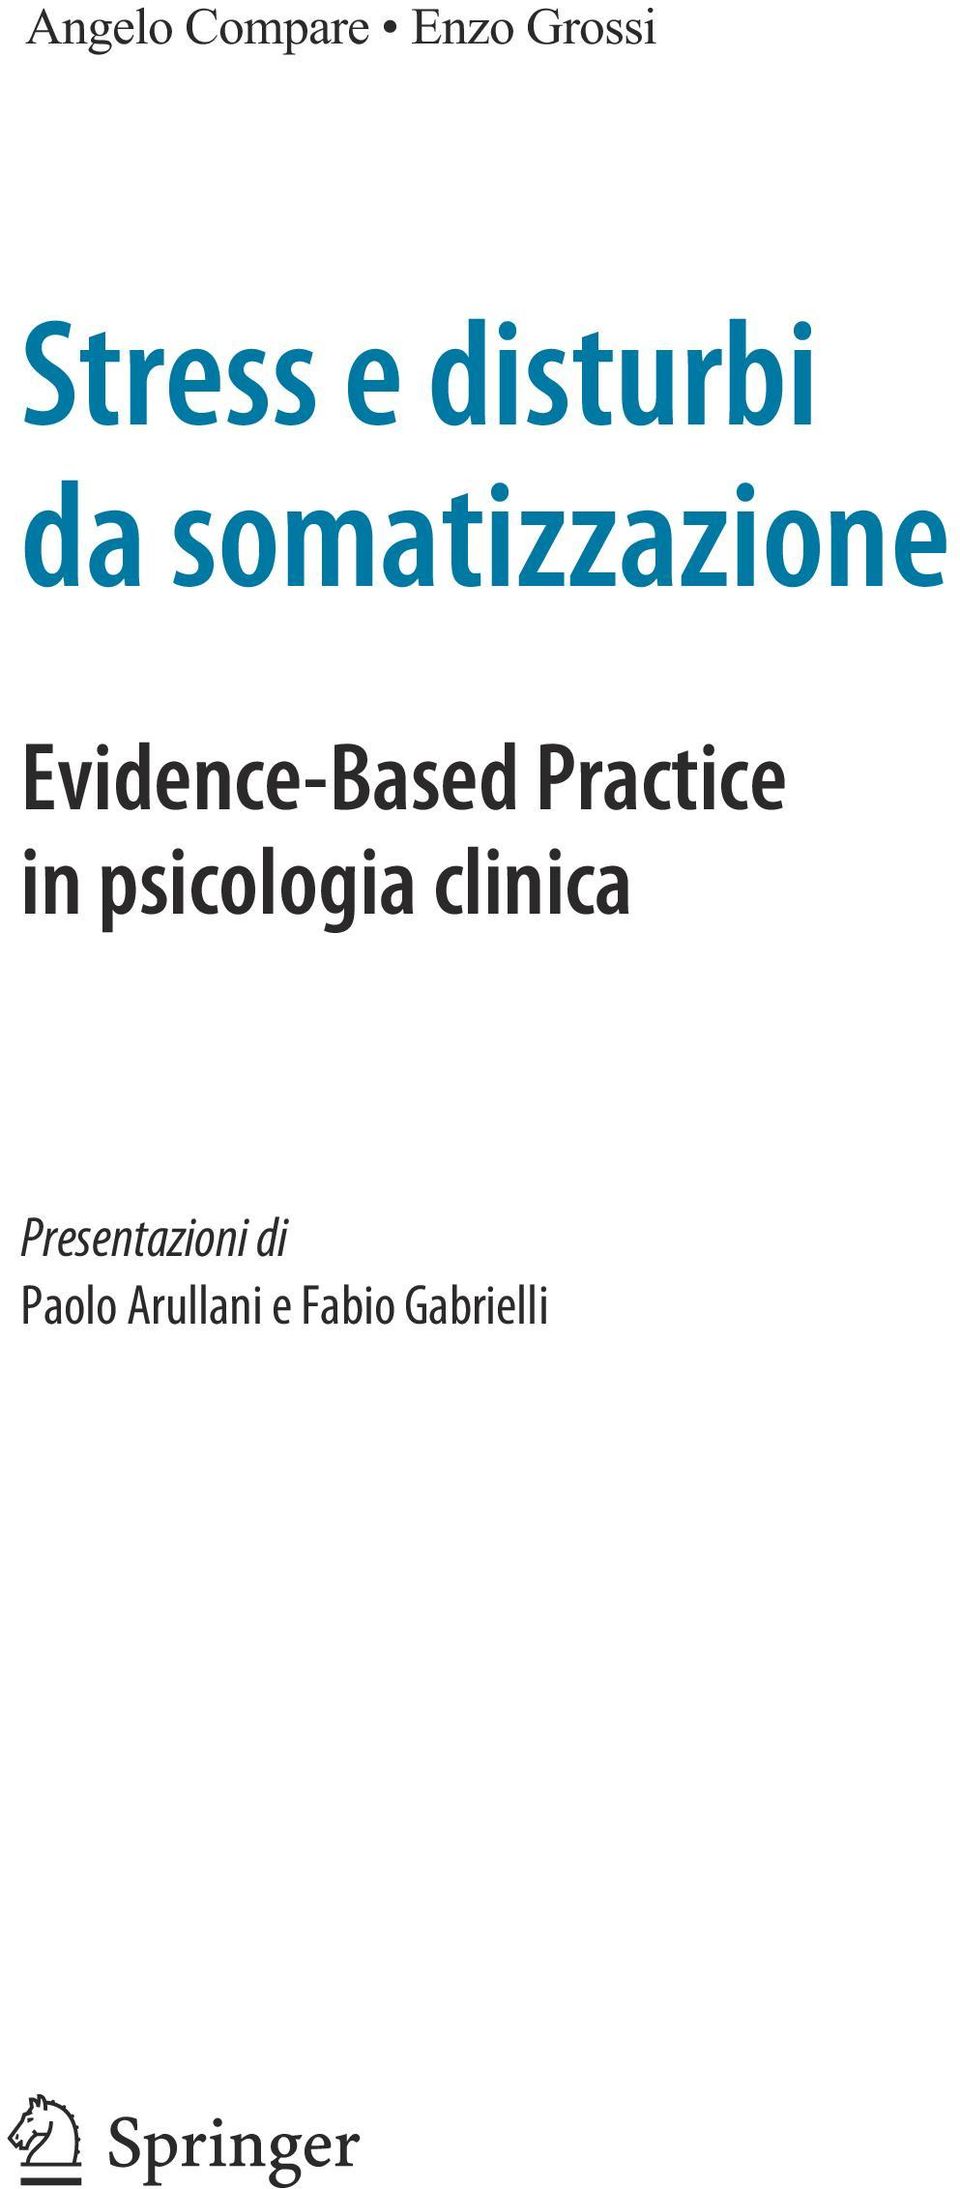 Evidence-Based Practice in psicologia